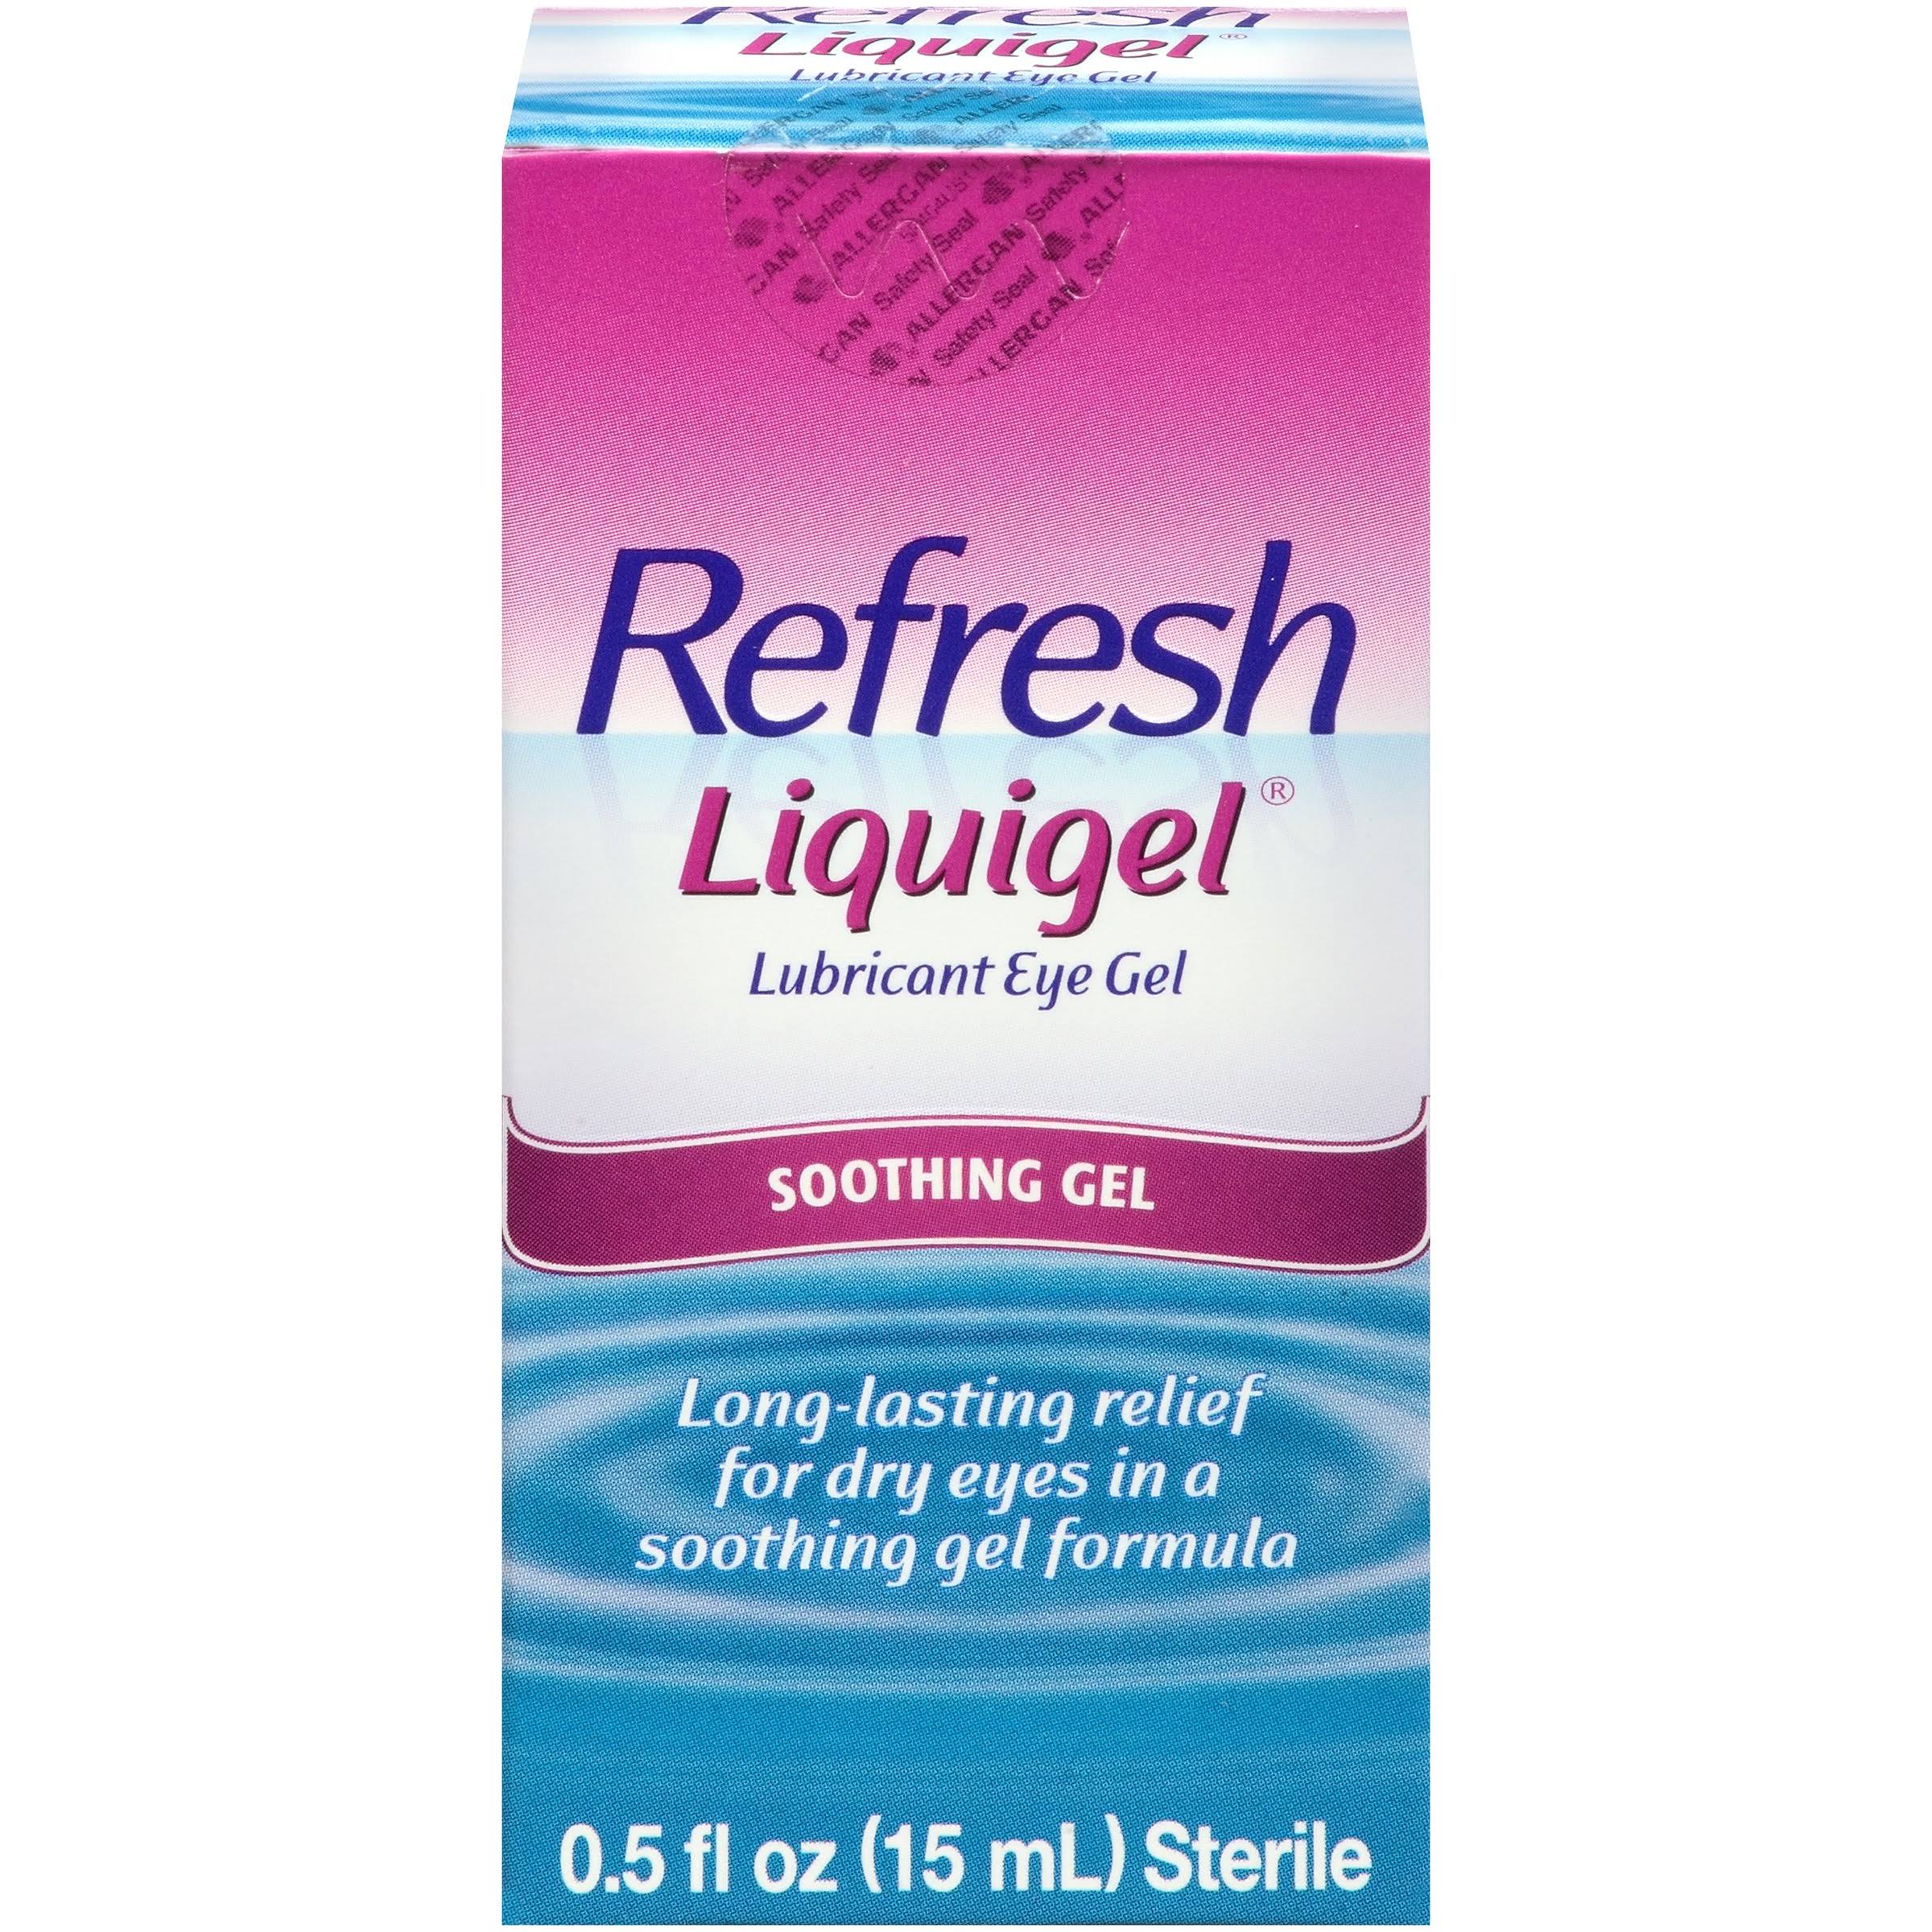 Refresh Liquigel Lubricant Eye Gel - 0.5 oz